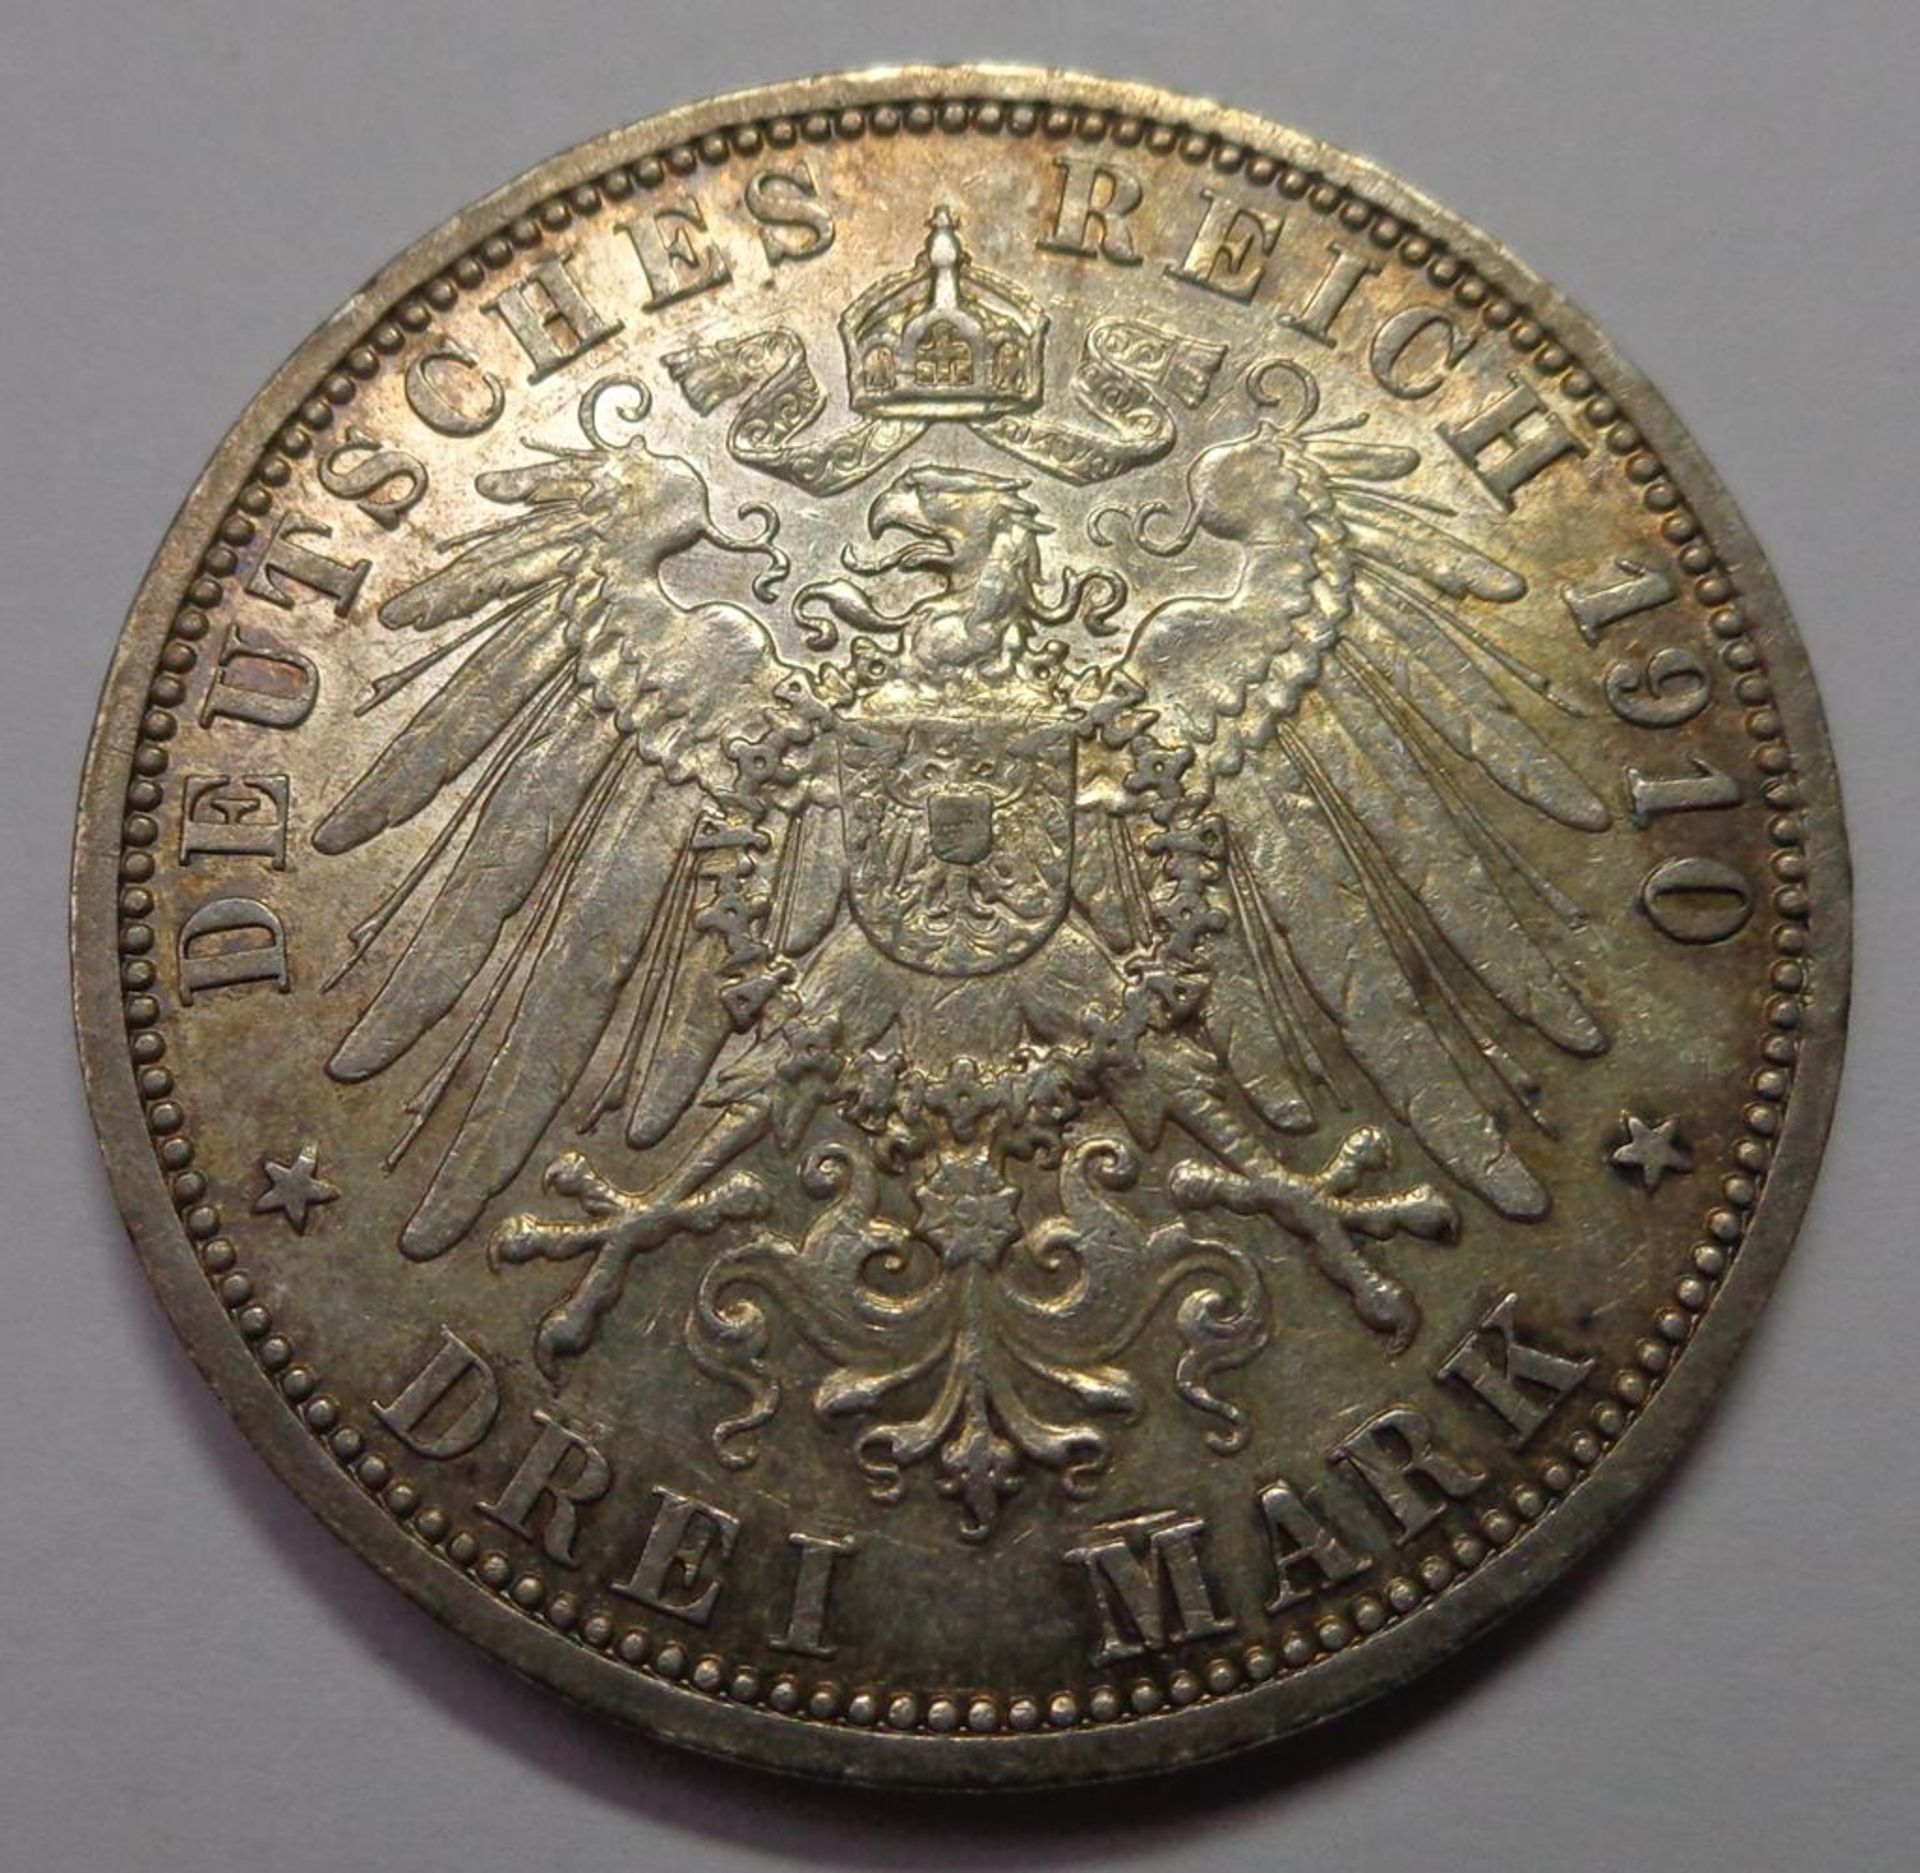 Drei Mark, Deutsches Reich, 1910 A, Ernst Ludwig Grossherzog von Hessen, s, 16,63 gr. - Bild 2 aus 2